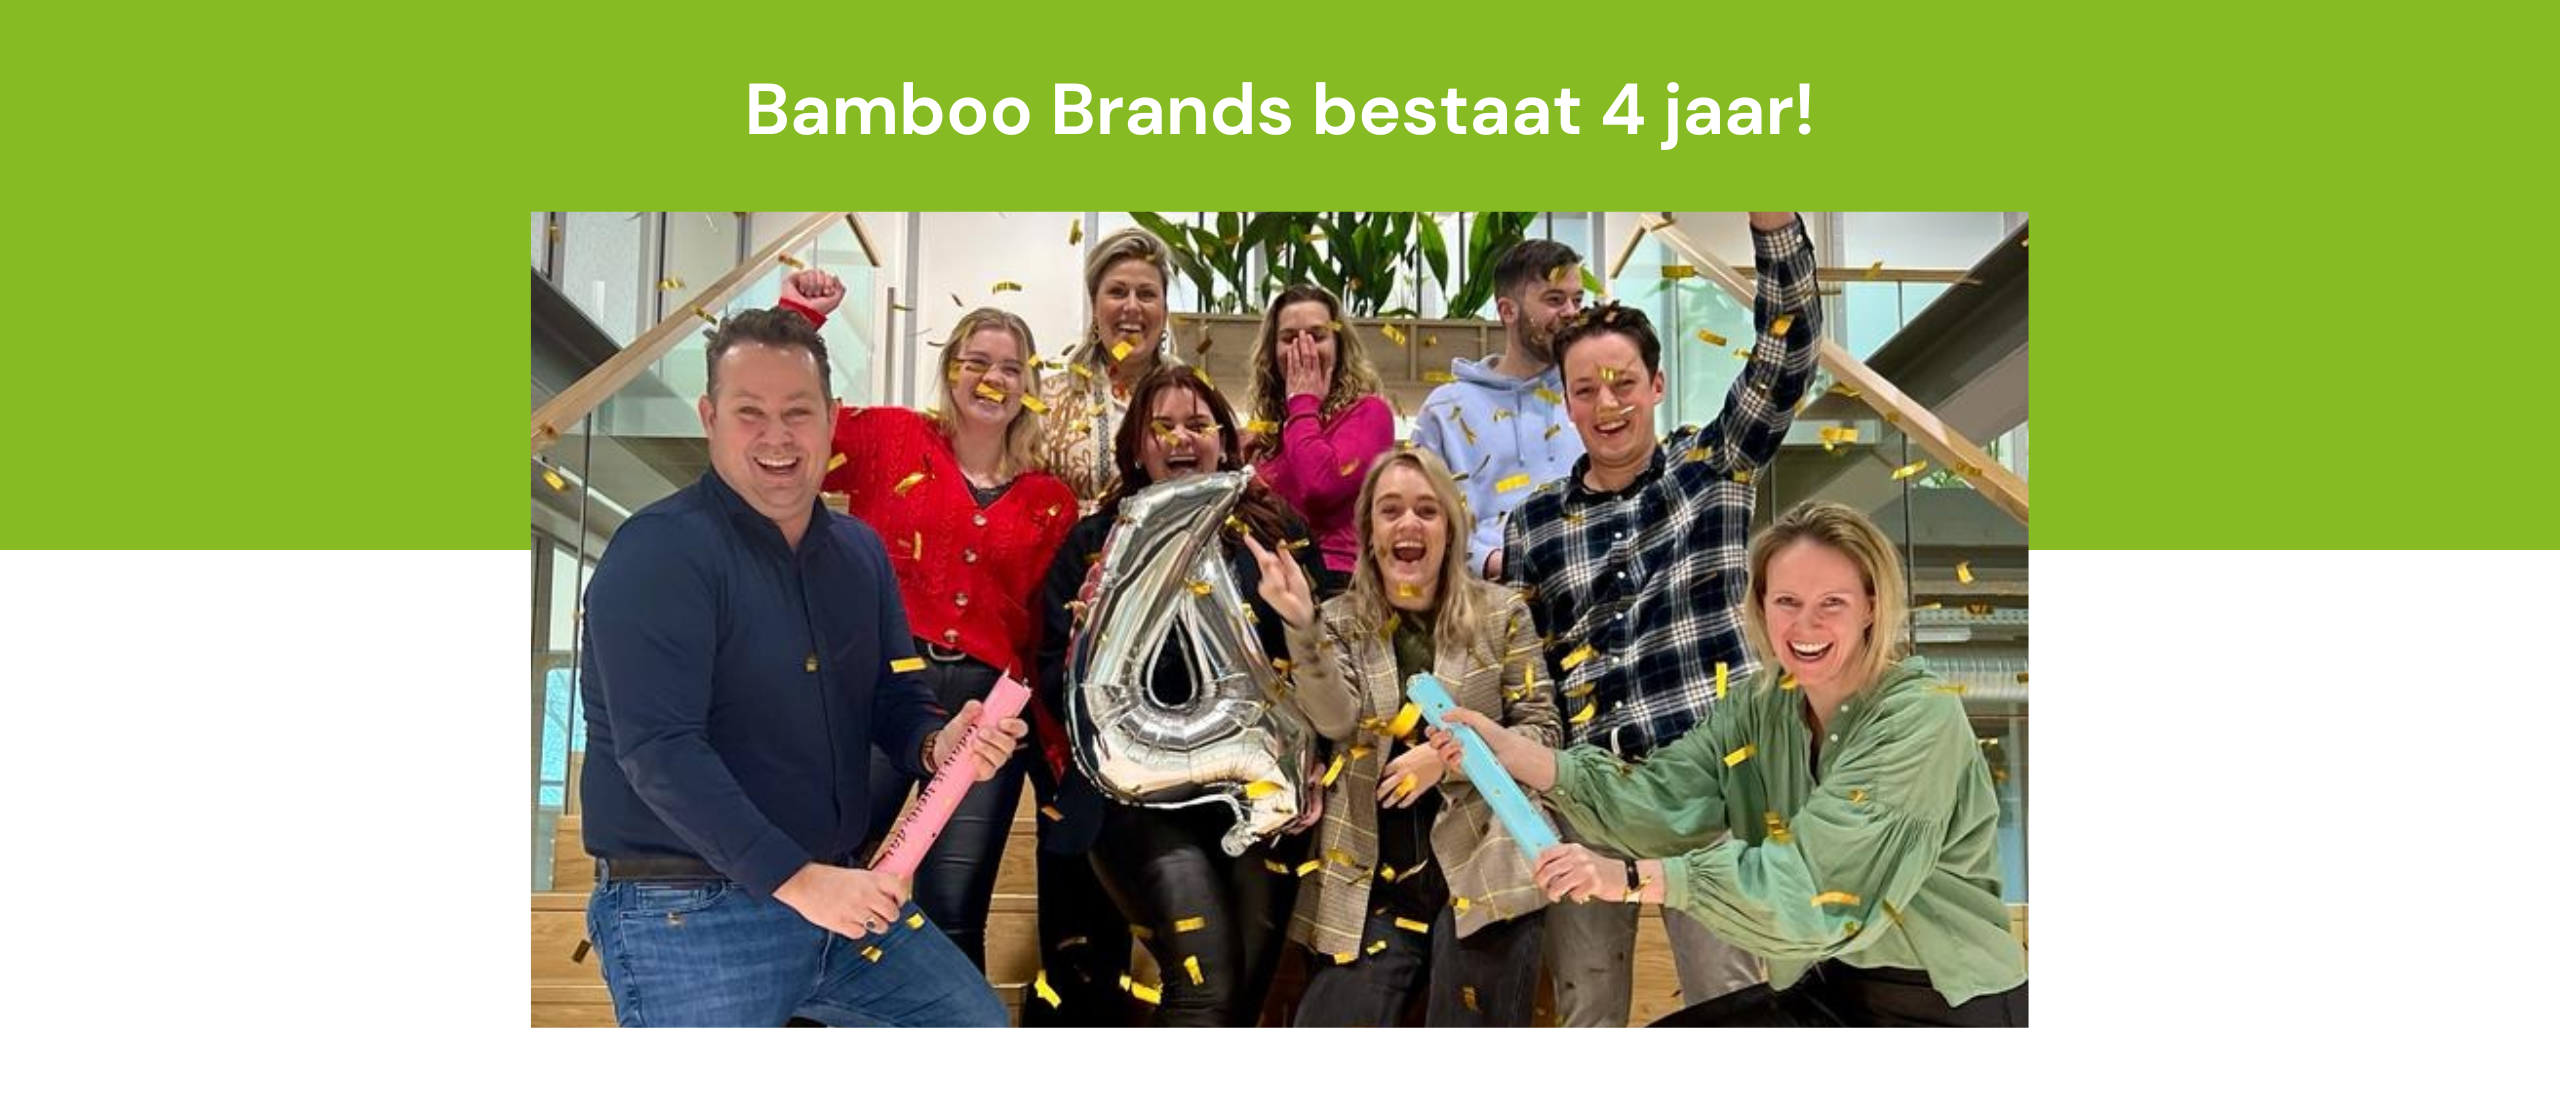 Bamboo Brands bestaat 4 jaar: een terugblik